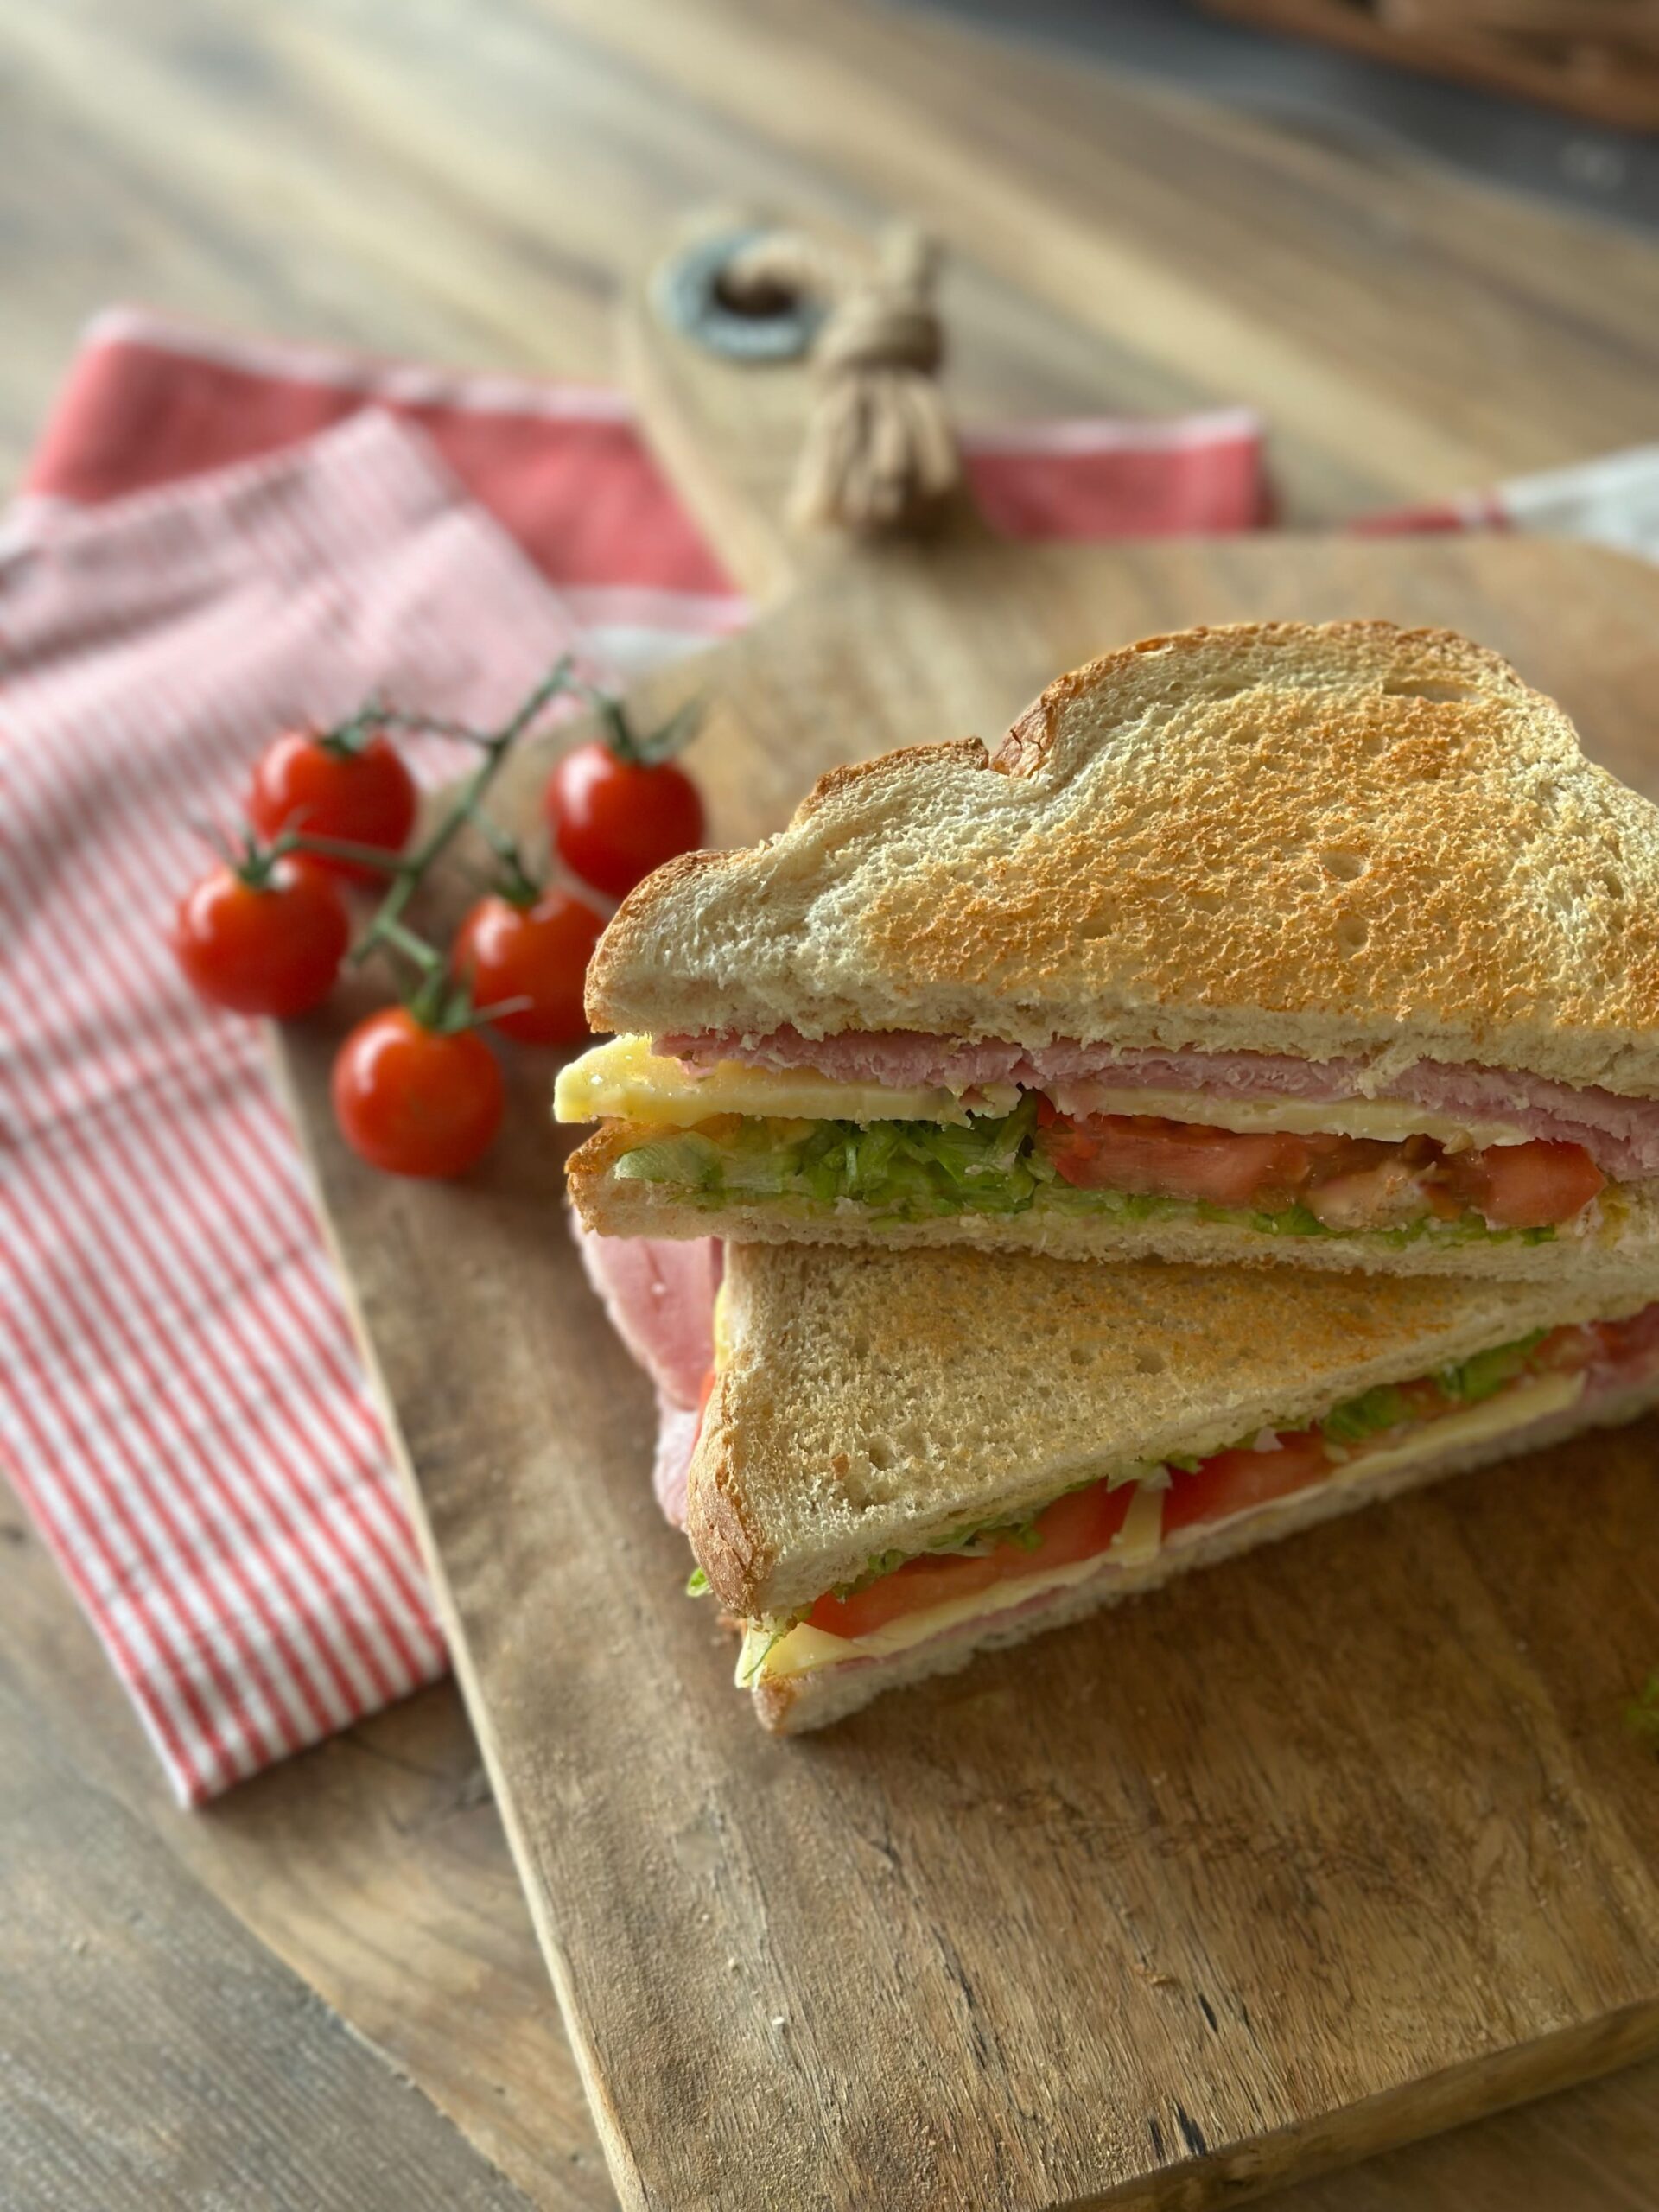 The ultimate houghton ham sandwich – British sandwich week